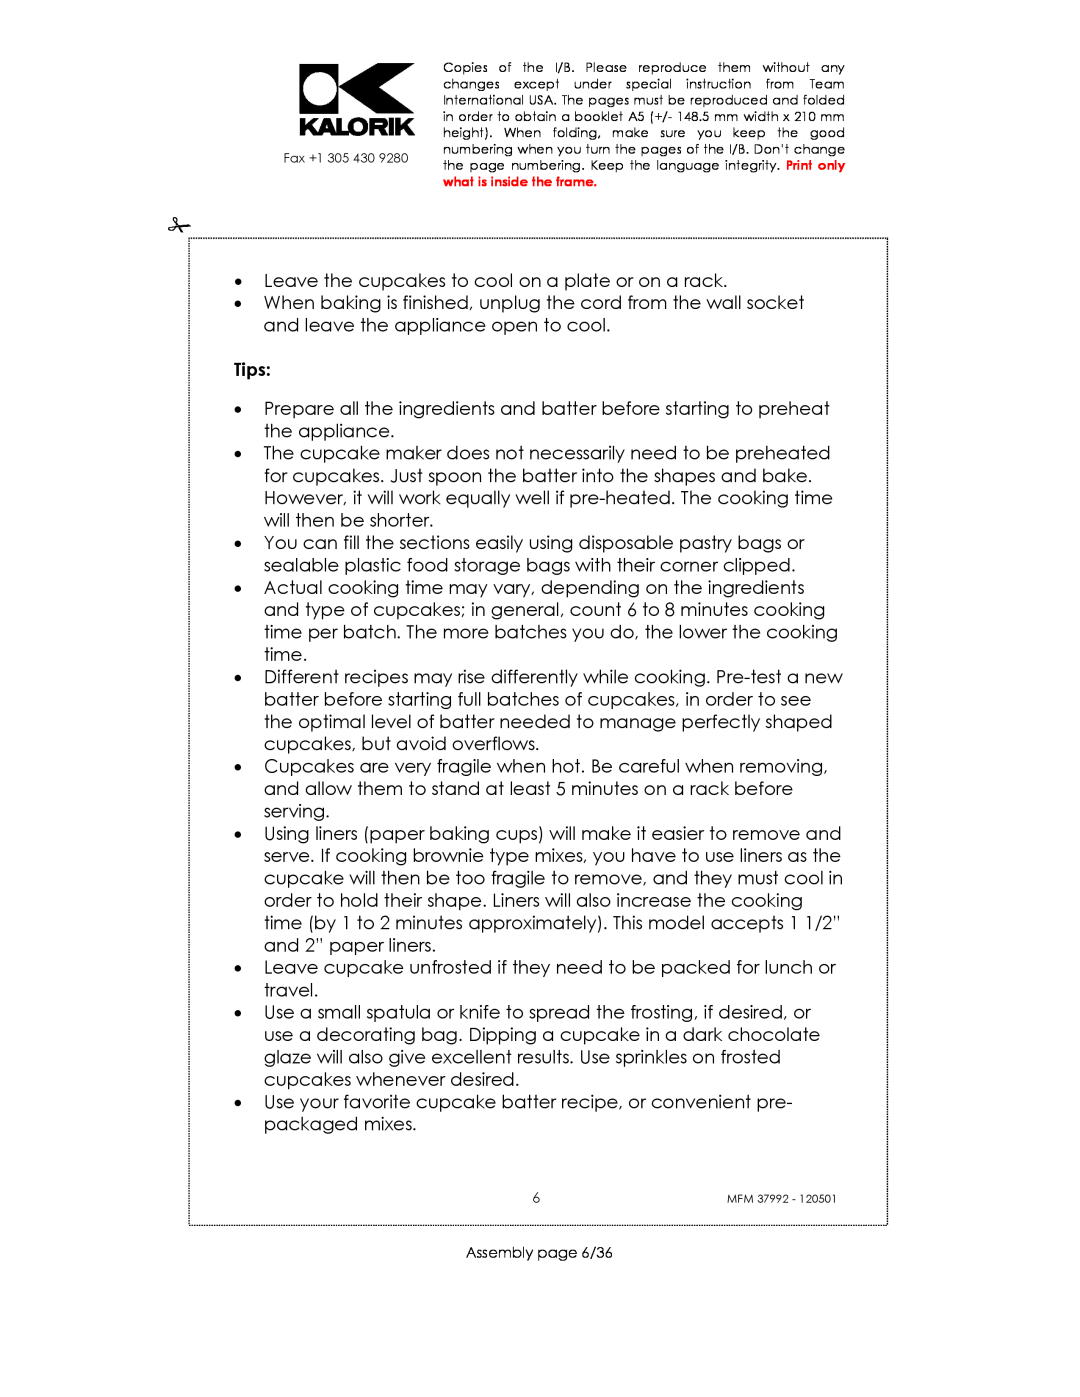 Kalorik MFM 37992 manual Tips, Assembly page 6/36 